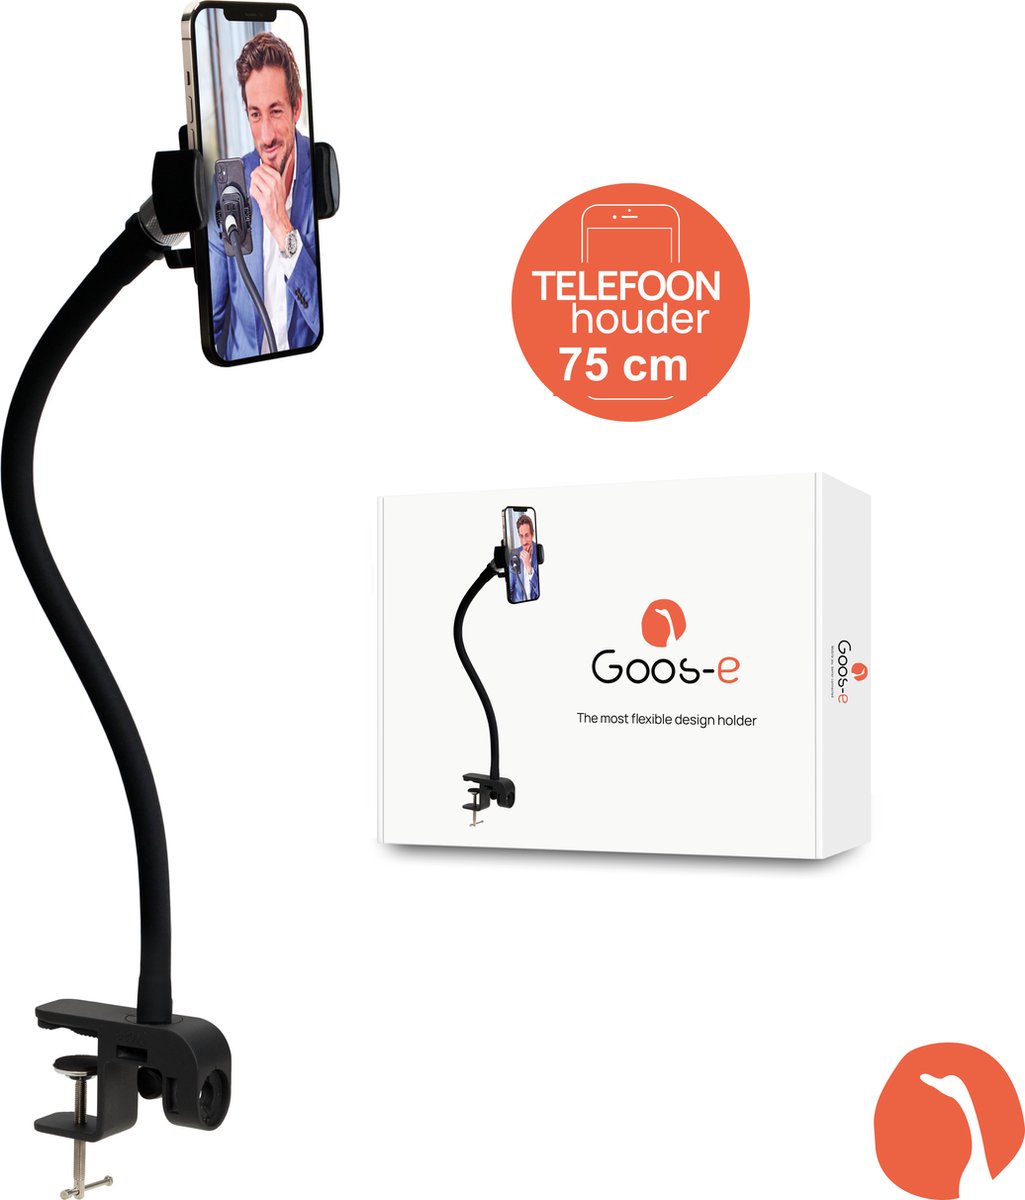 GOOS-E Telefoonhouder - telefoonstandaard - telefoon statief - met lange 75 cm hals - 2-weg klem - Flexibel & Stijlvol - o.a. bureau, tafel, bed, hometrainer - NL design